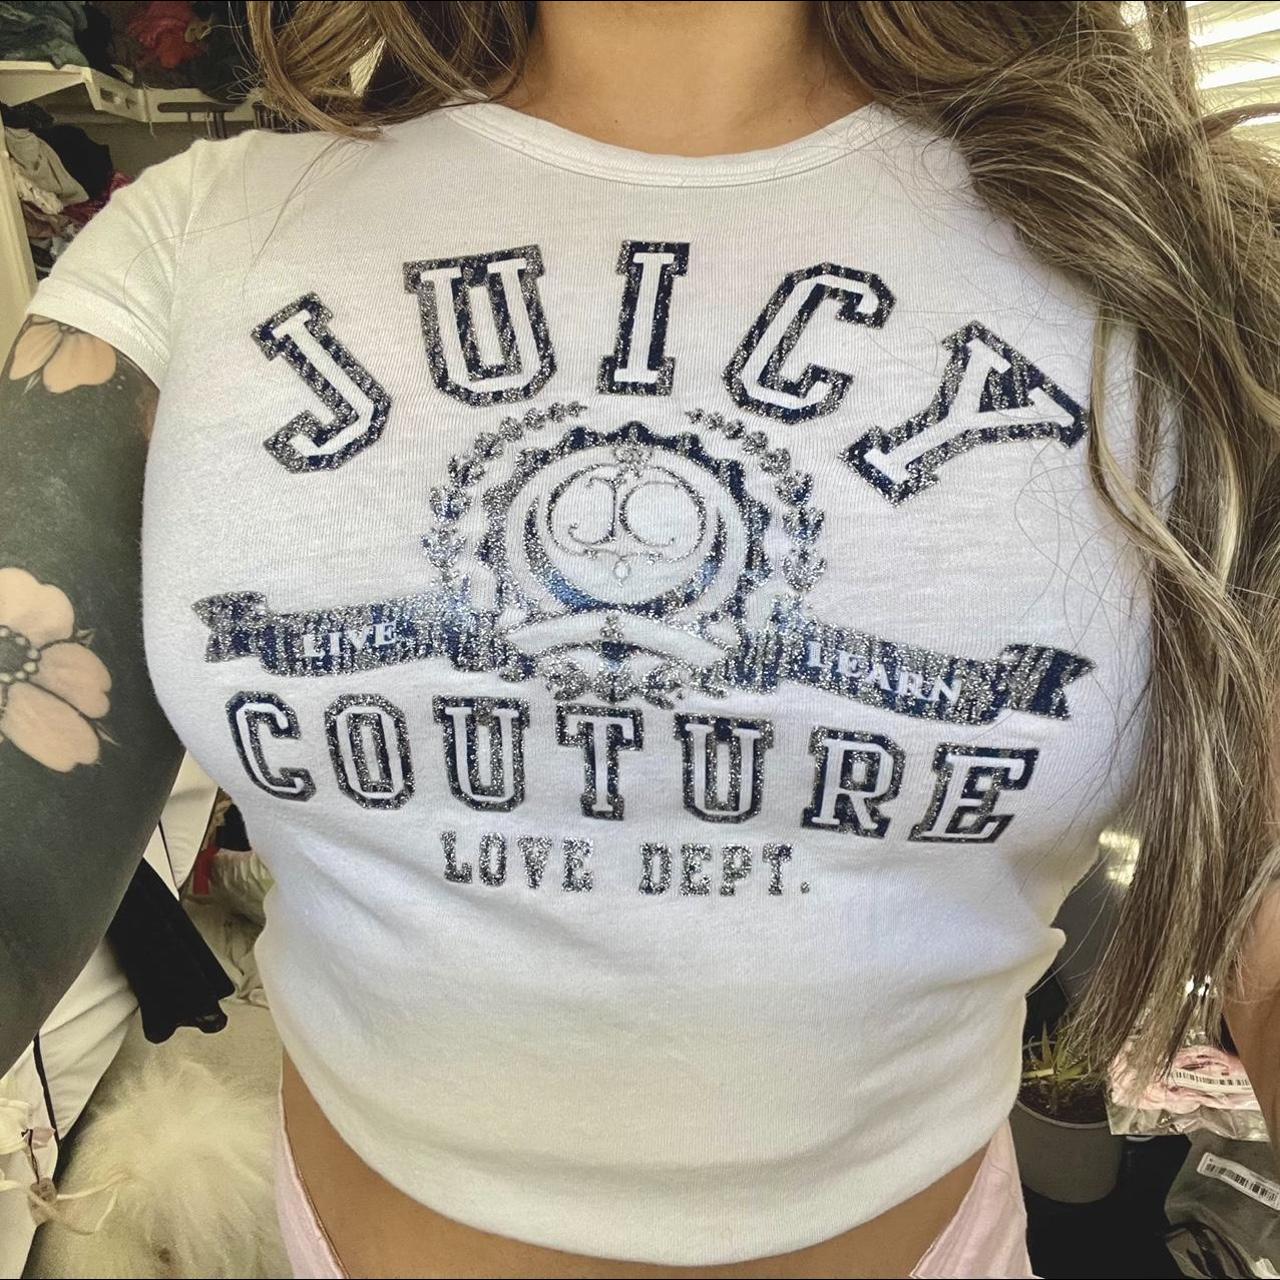 新品♡Juicy Couture♡Tシャツ ネイビー 2000s Y2K